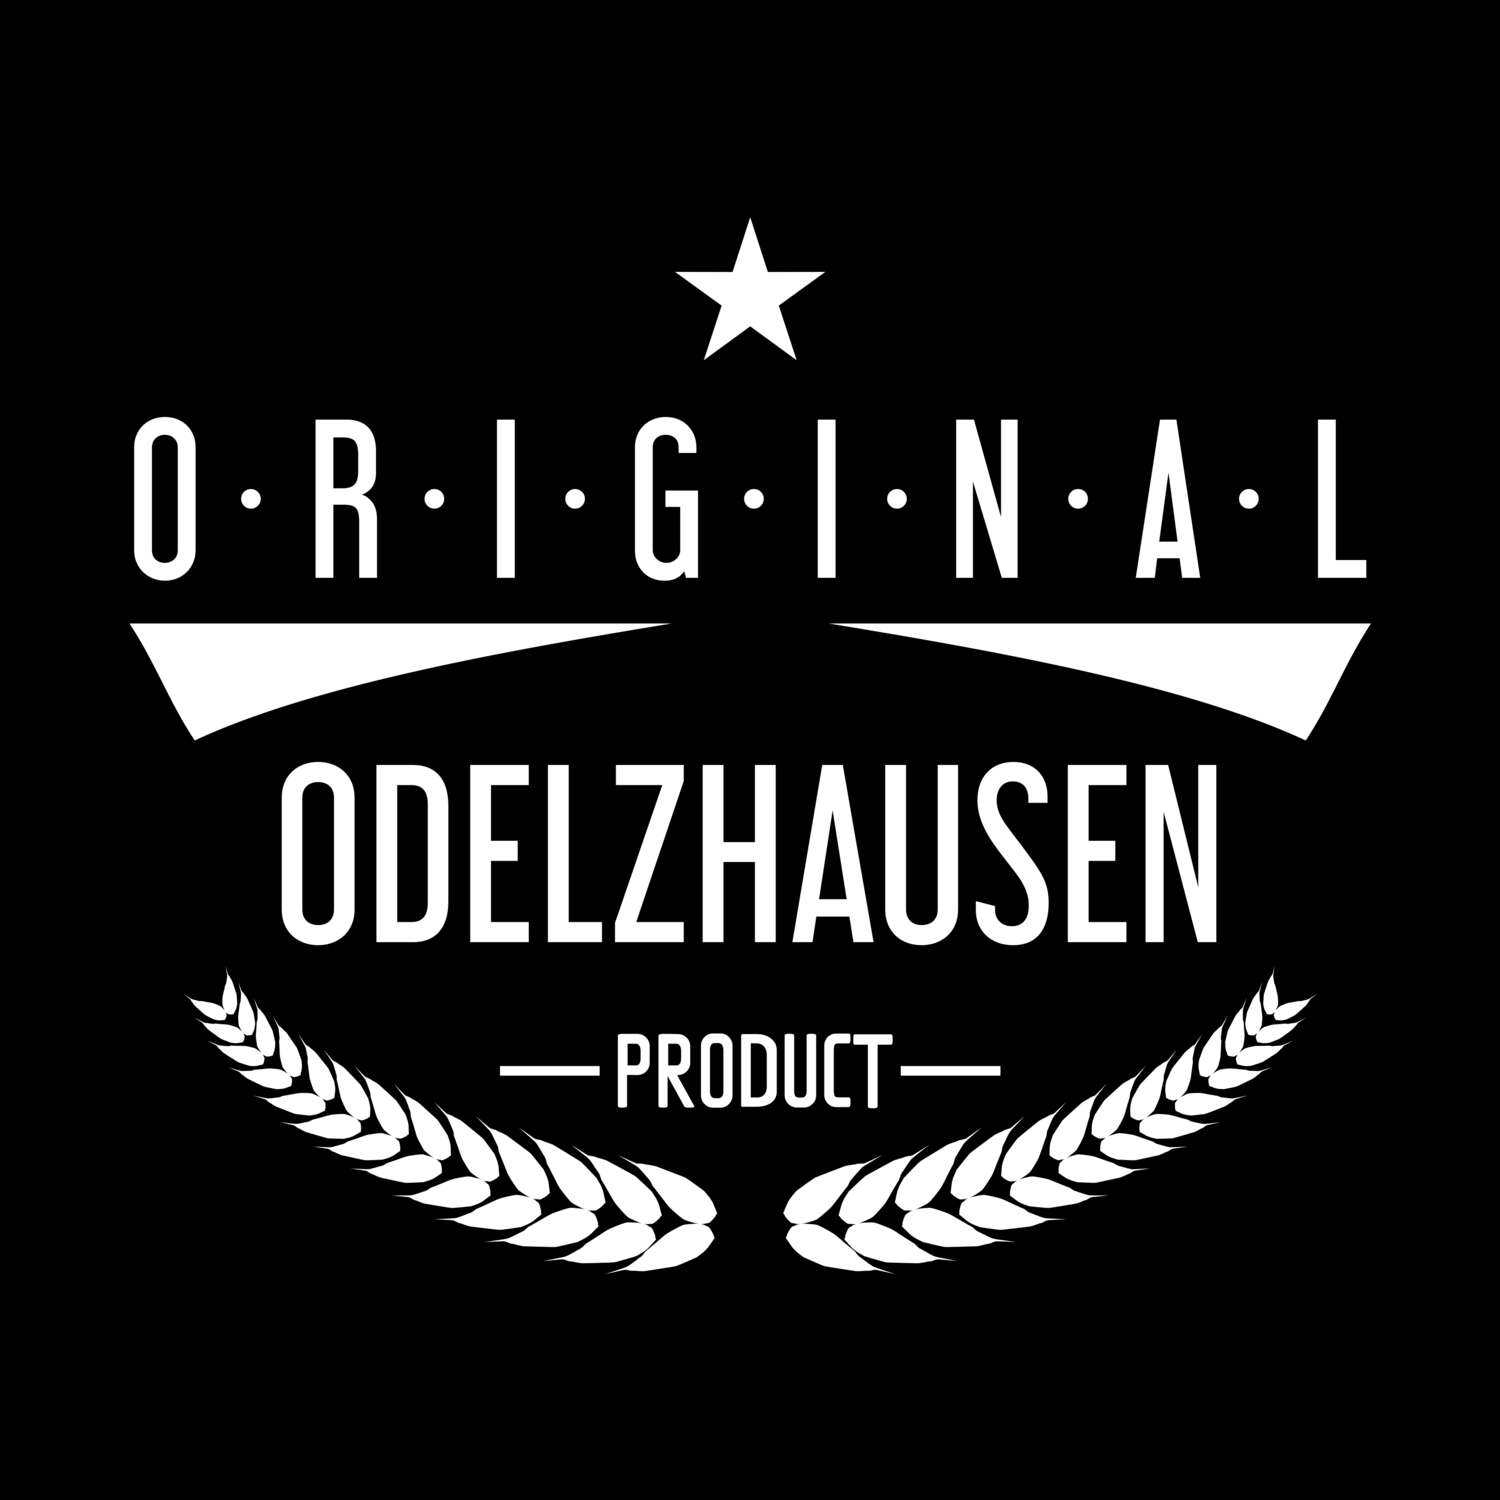 Odelzhausen T-Shirt »Original Product«